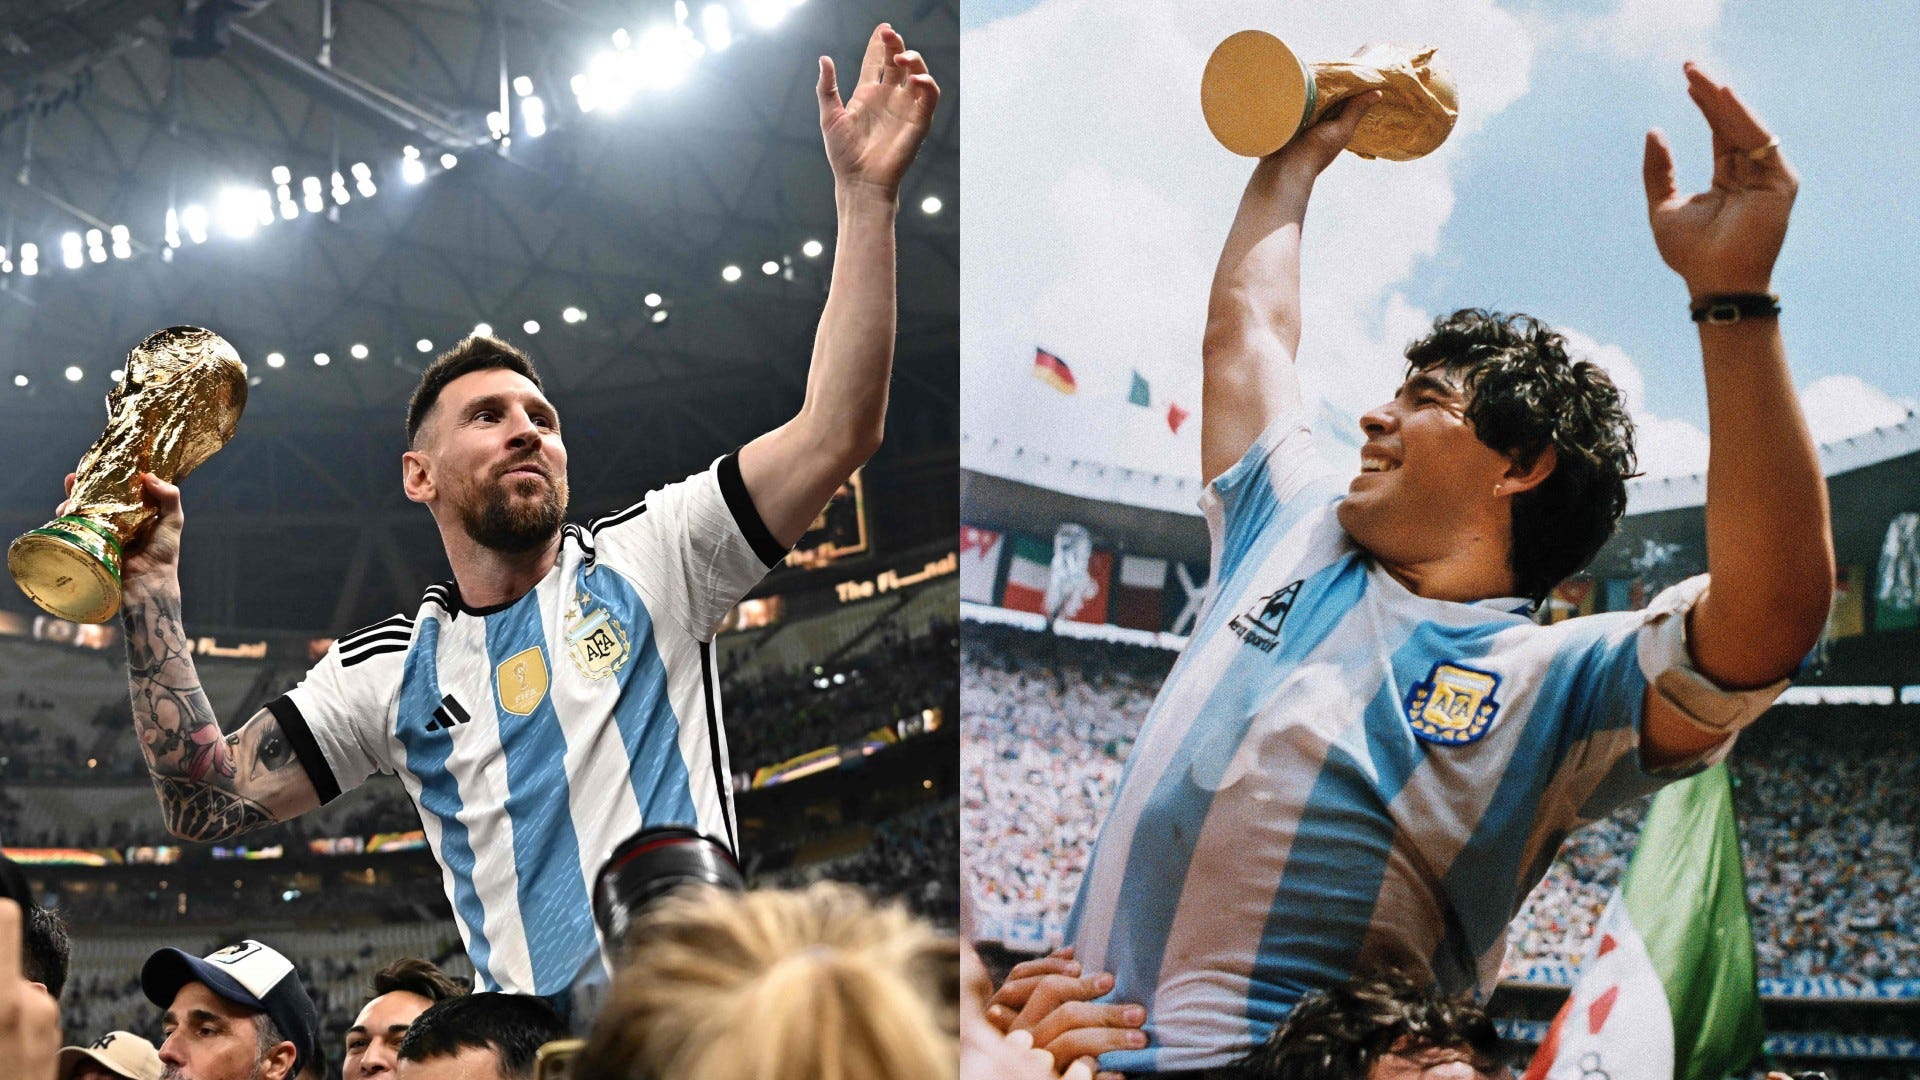 Argentina World Cup: Cùng xem lại những khoảnh khắc đáng nhớ của đội tuyển Argentina trong World Cup. Ngắm nhìn các siêu sao bóng đá diễu hành trên sân cỏ, khám phá vẻ đẹp của bóng đá và đam mê đam mê của người hâm mộ.